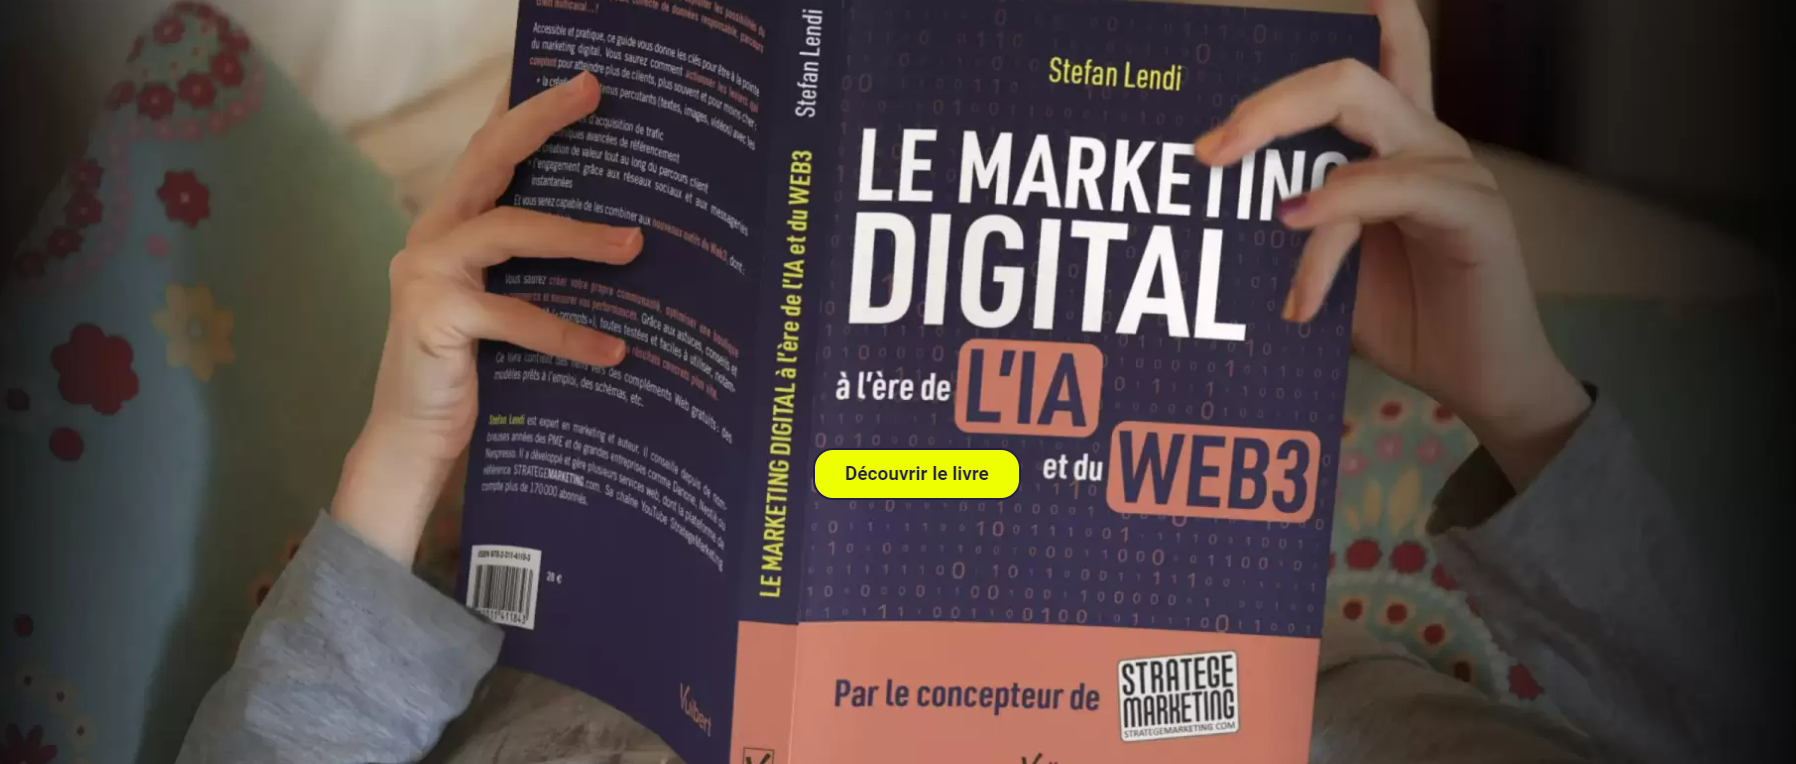 Le Marketing Digital à l'ère de l'IA et du Web 3 - Ce qu'il faut retenir du nouveau livre de Stefan Lendi 4